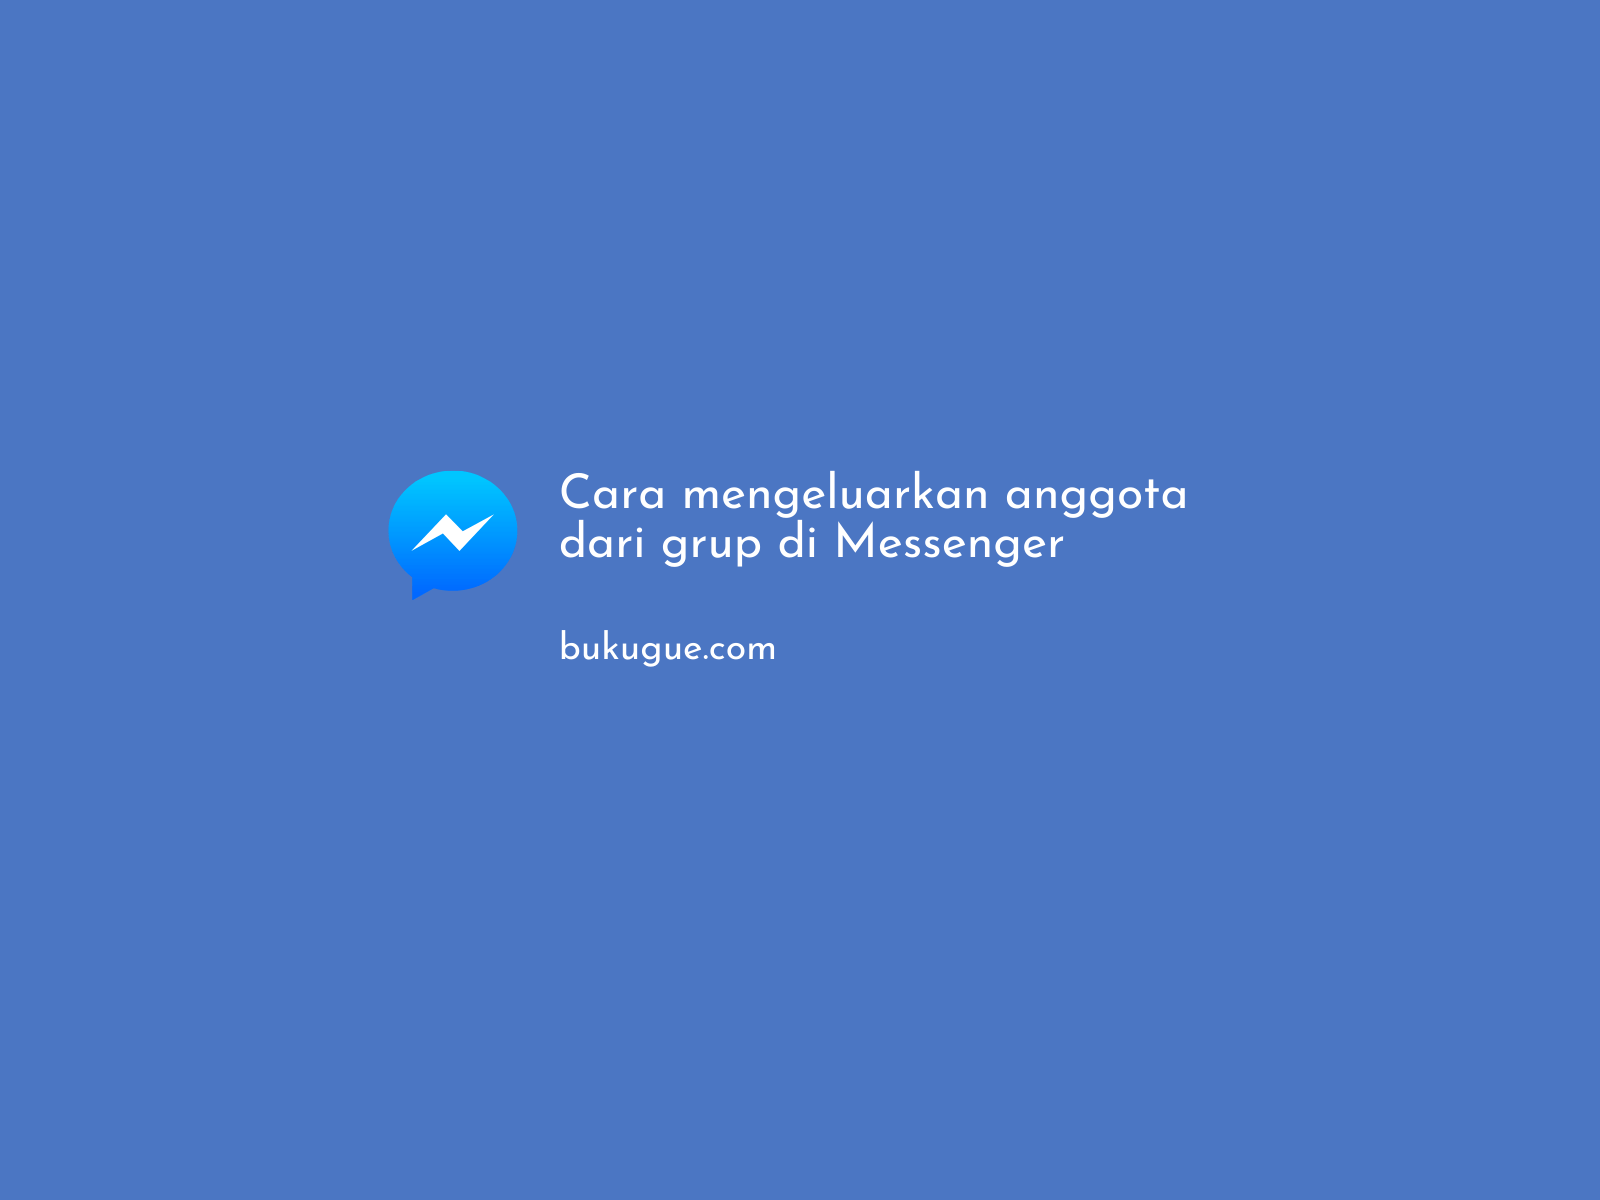 Cara mengeluarkan anggota dari grup chat di Messenger